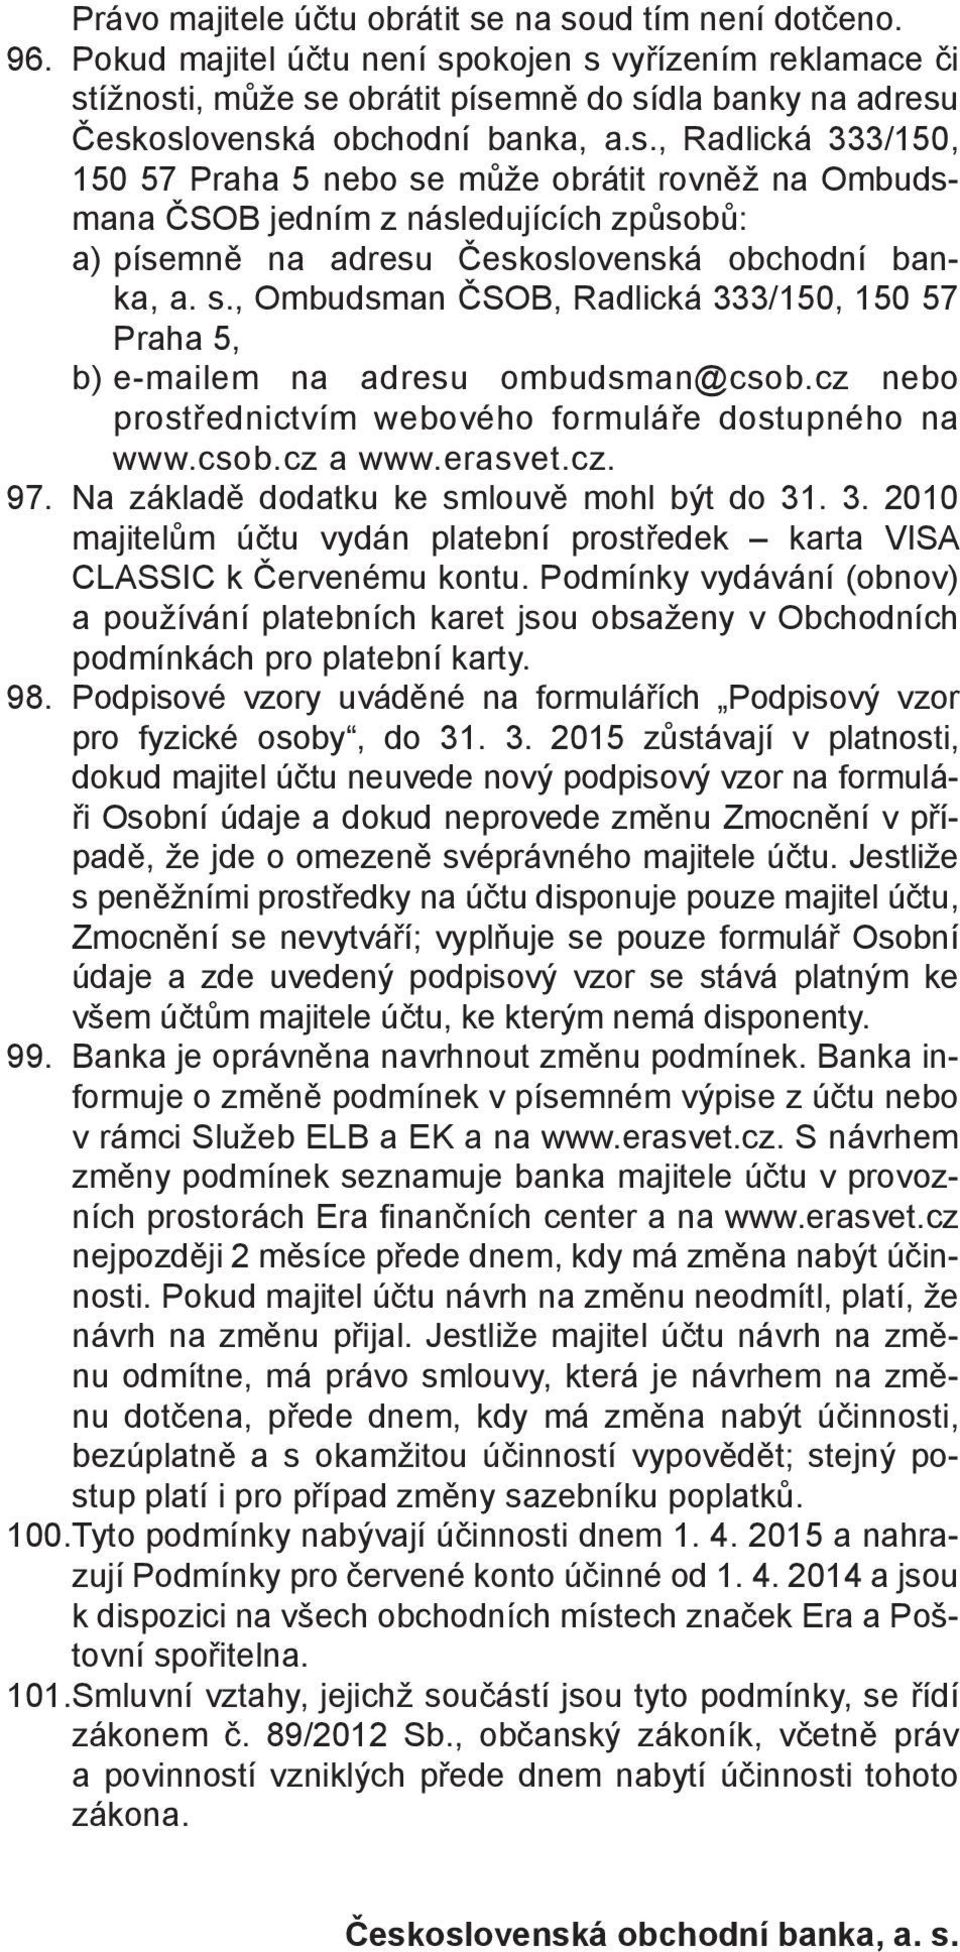 s., Ombudsman ČSOB, Radlická 333/150, 150 57 Praha 5, b) e-mailem na adresu ombudsman@csob.cz nebo prostřednictvím webového formuláře dostupného na www.csob.cz a www.erasvet.cz. 97.